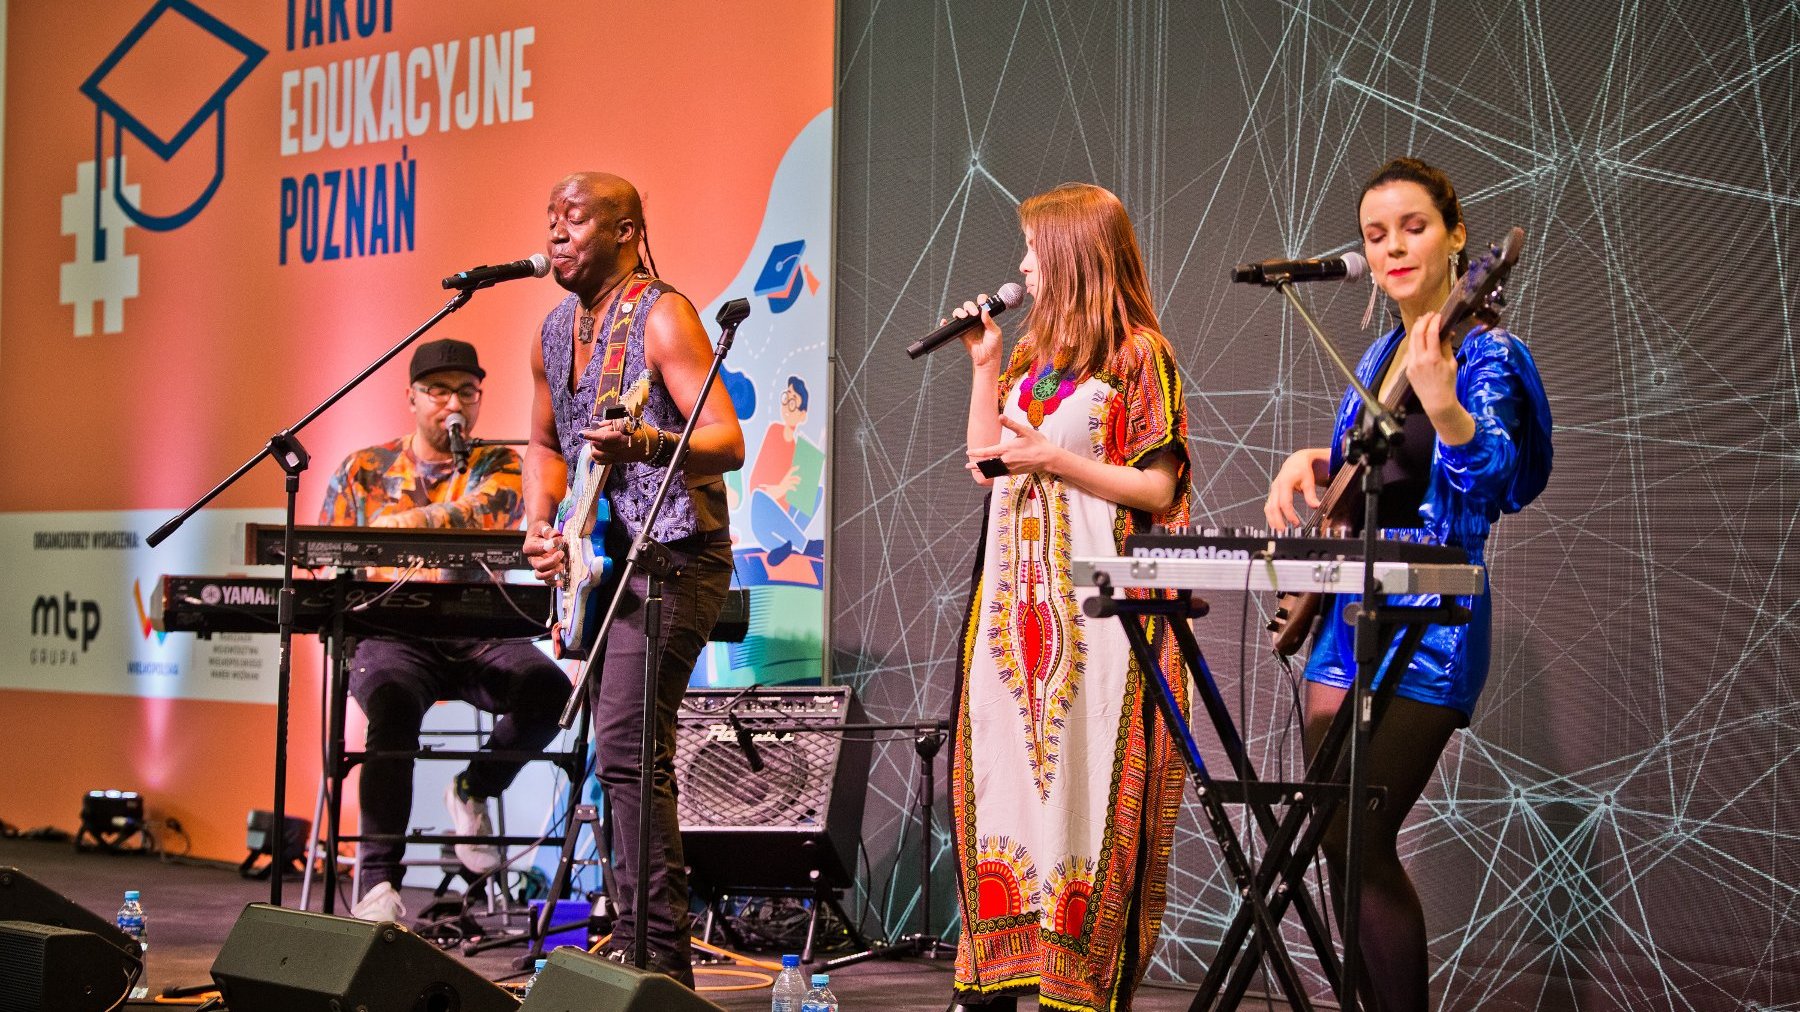 Zdjęcie przedstawia muzyków z instrumentami na scenie - dwie kobiety i dwóch mężczyzn.